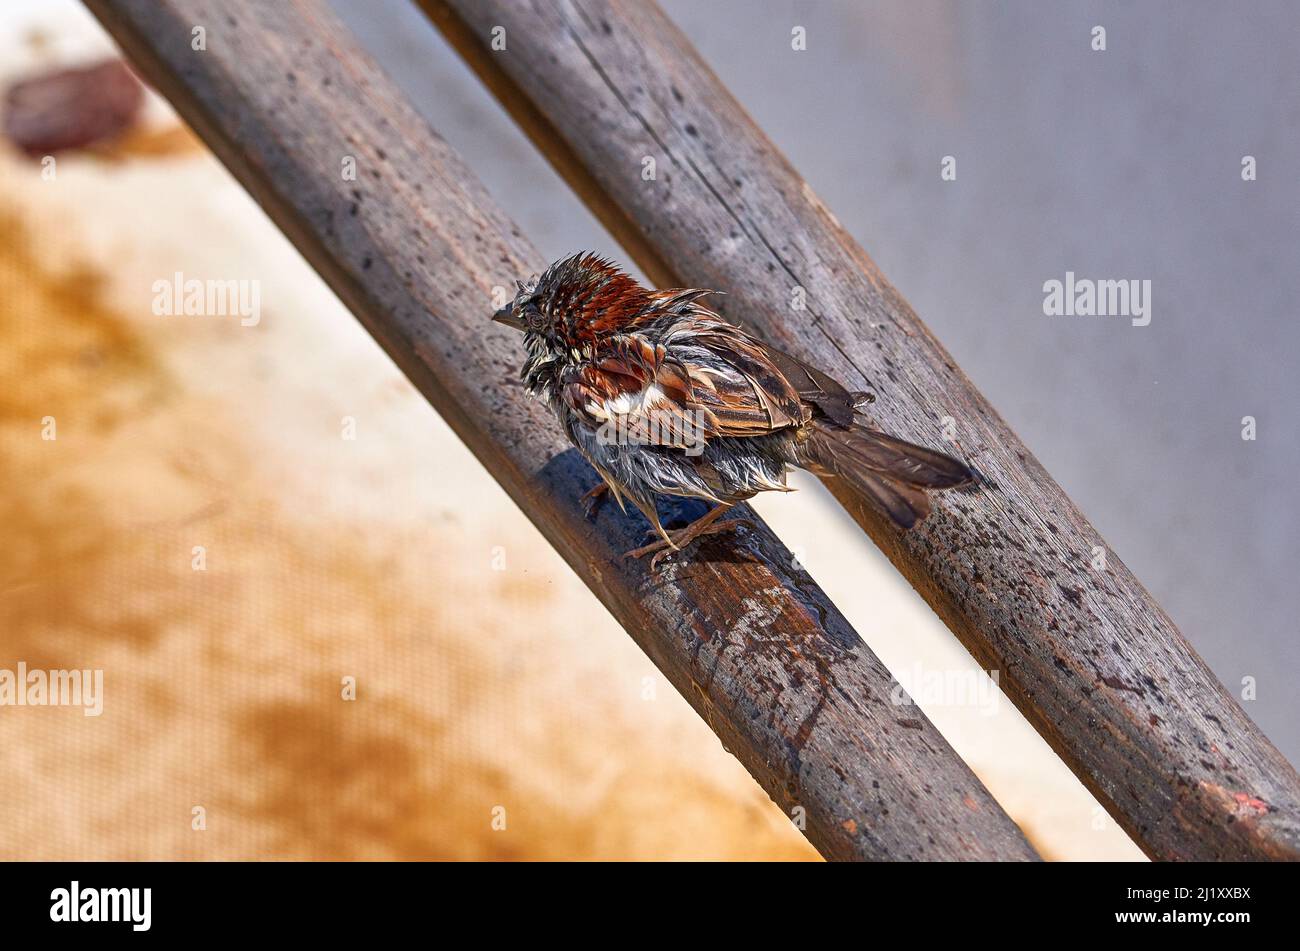 Piccolo passero sul recinto di legno Foto Stock